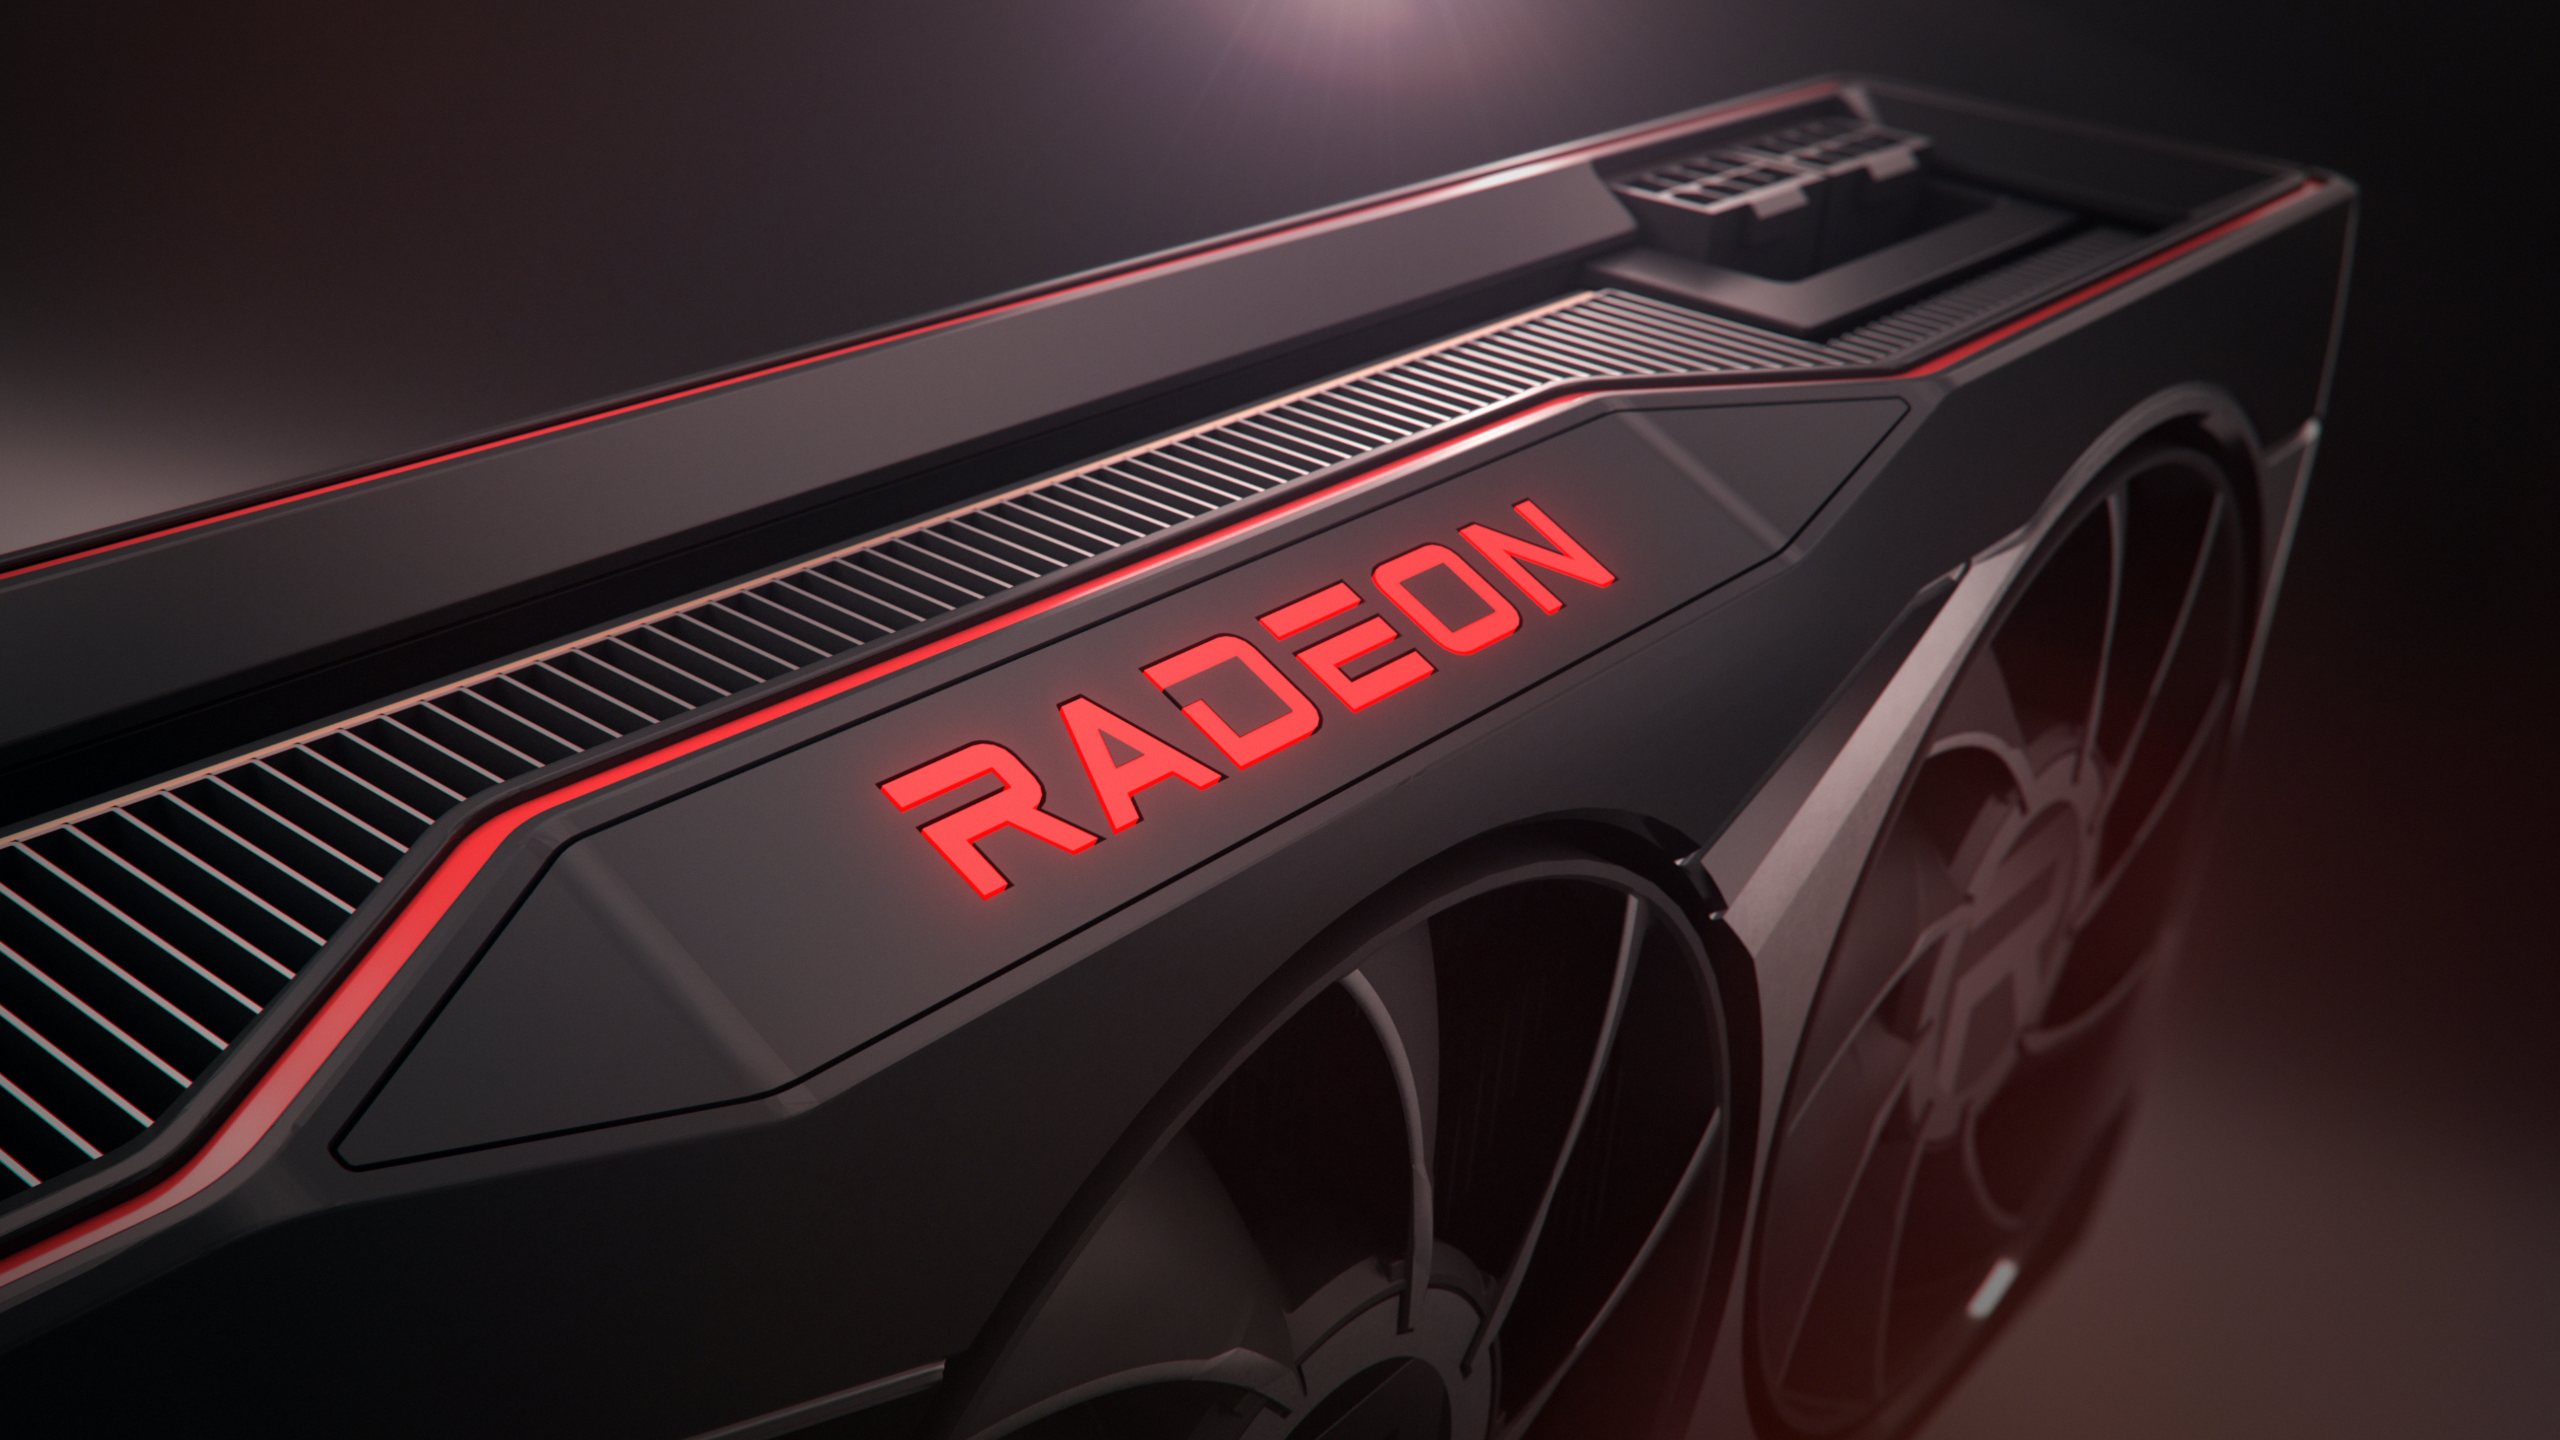 La AMD Radeon RX 6700 XT podría llegar a finales de marzo